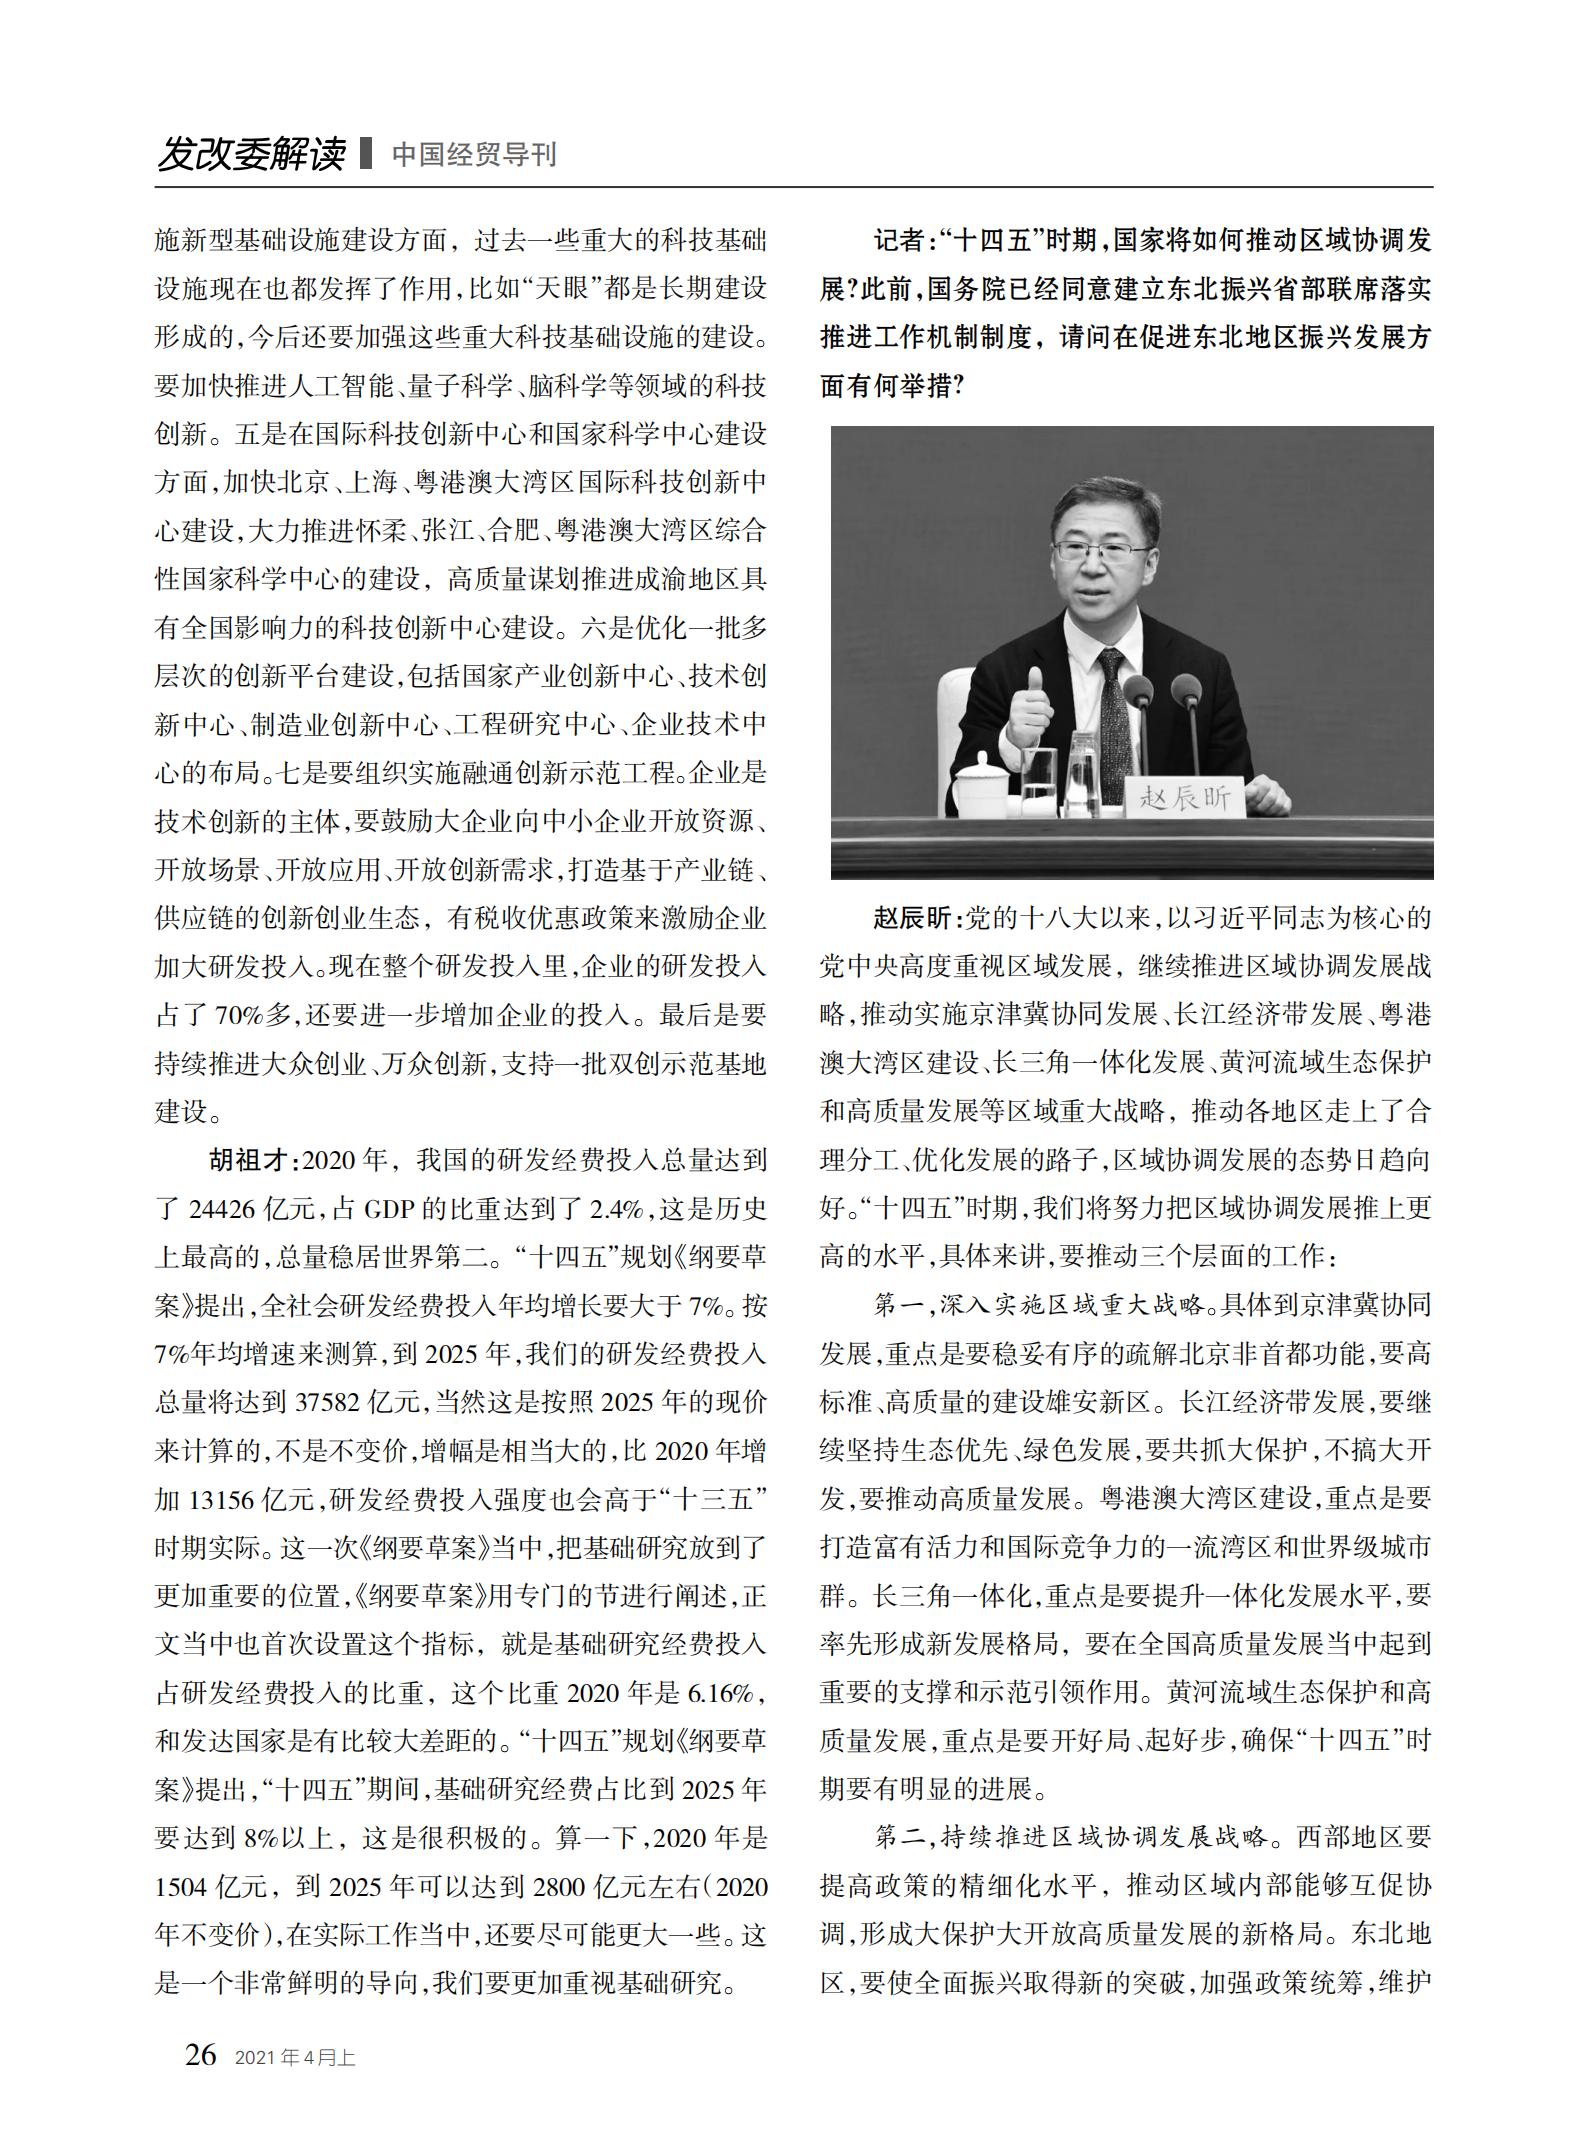 中国经贸导刊2021-4上印刷_25.jpg